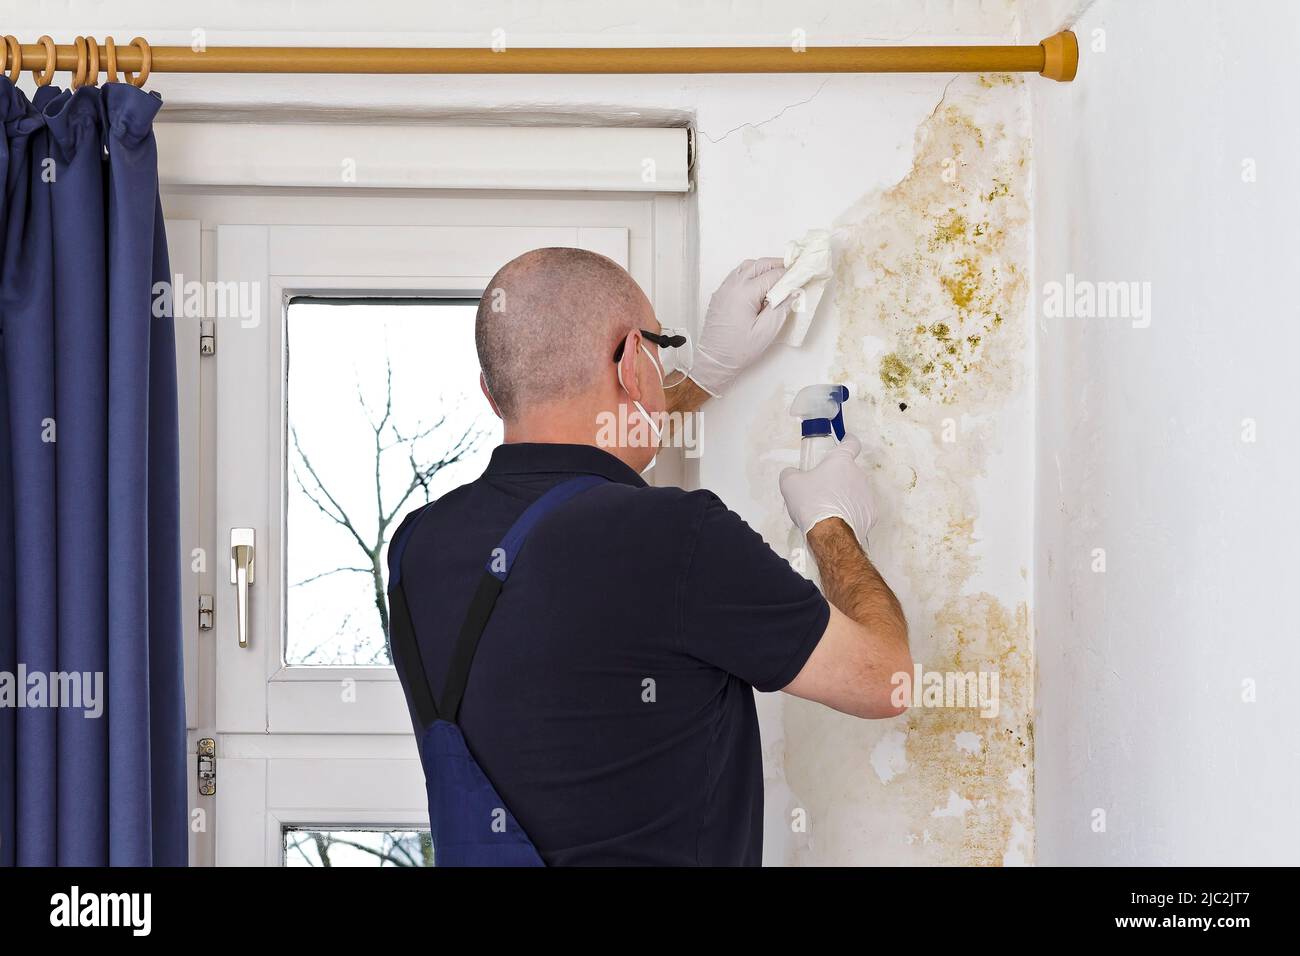 Hombre quitando moho o moho creciendo detrás de las cortinas de una pared externa en una casa vieja con aerosol antifúngico y tejidos. Foto de stock